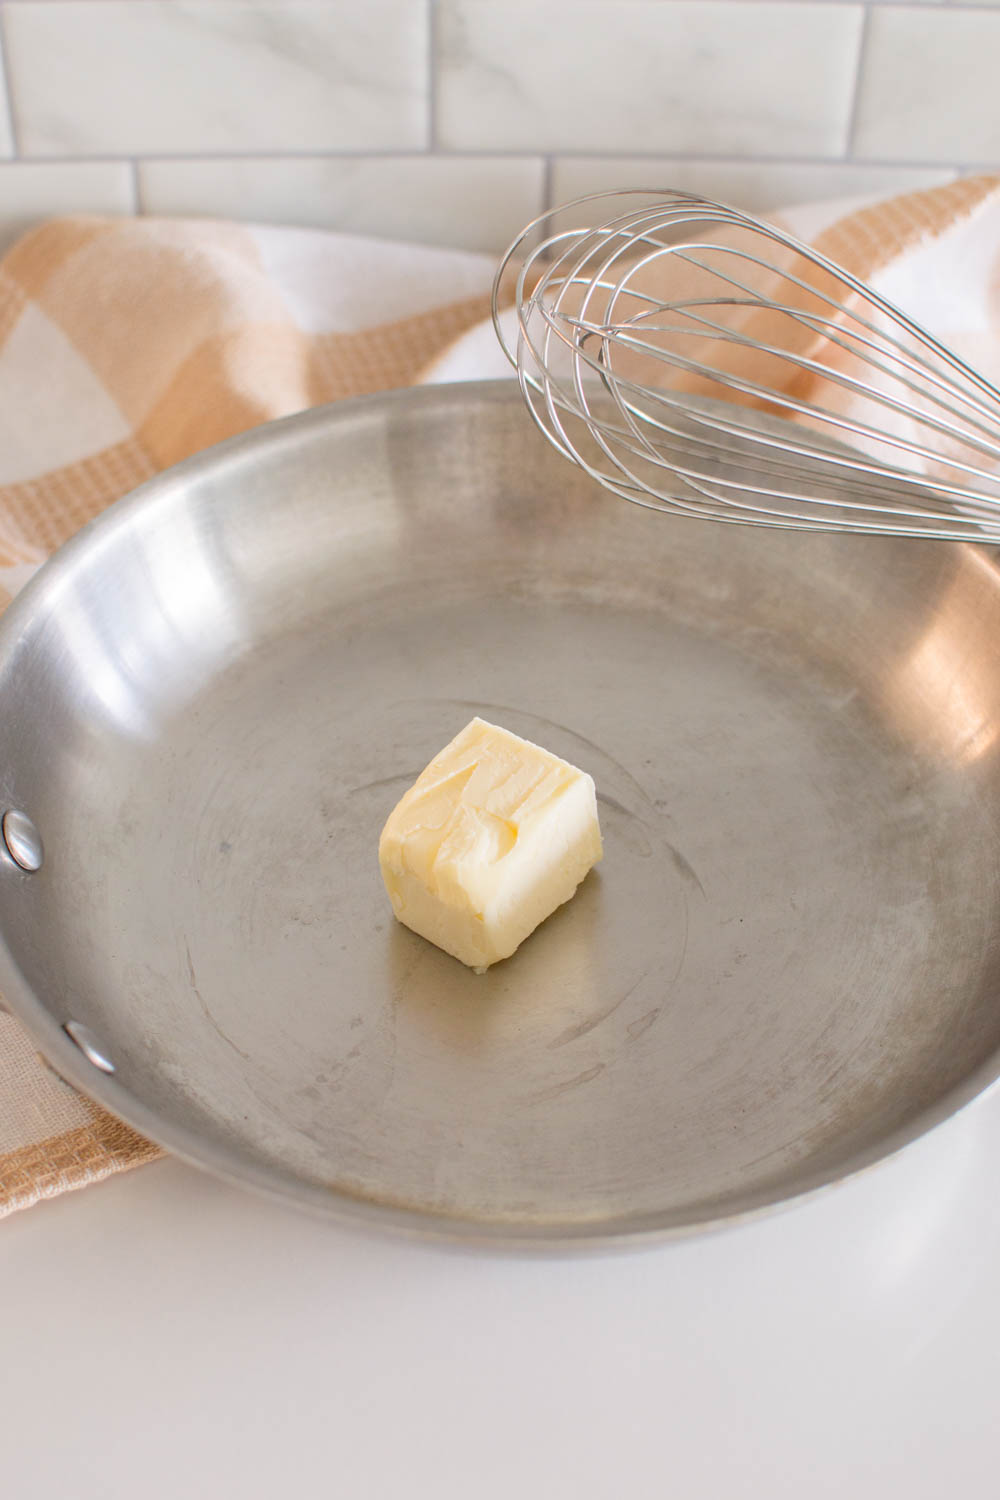 Melting butter on a large skillet